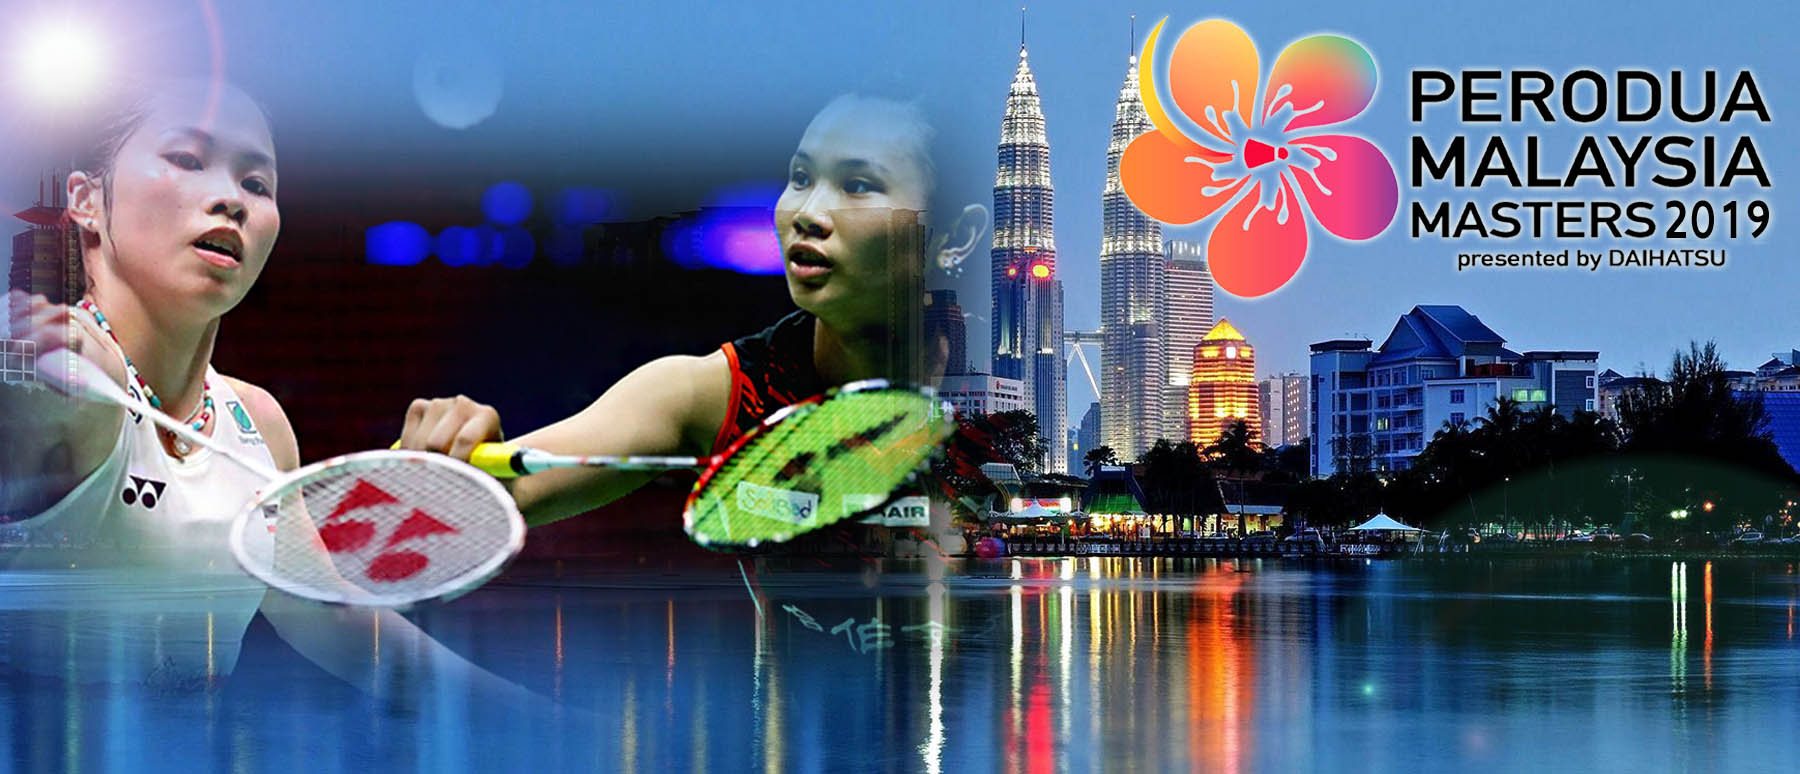 เชียร์สด ! แบดมินตัน PERODUA Malaysia Masters 2019 : รอบ 